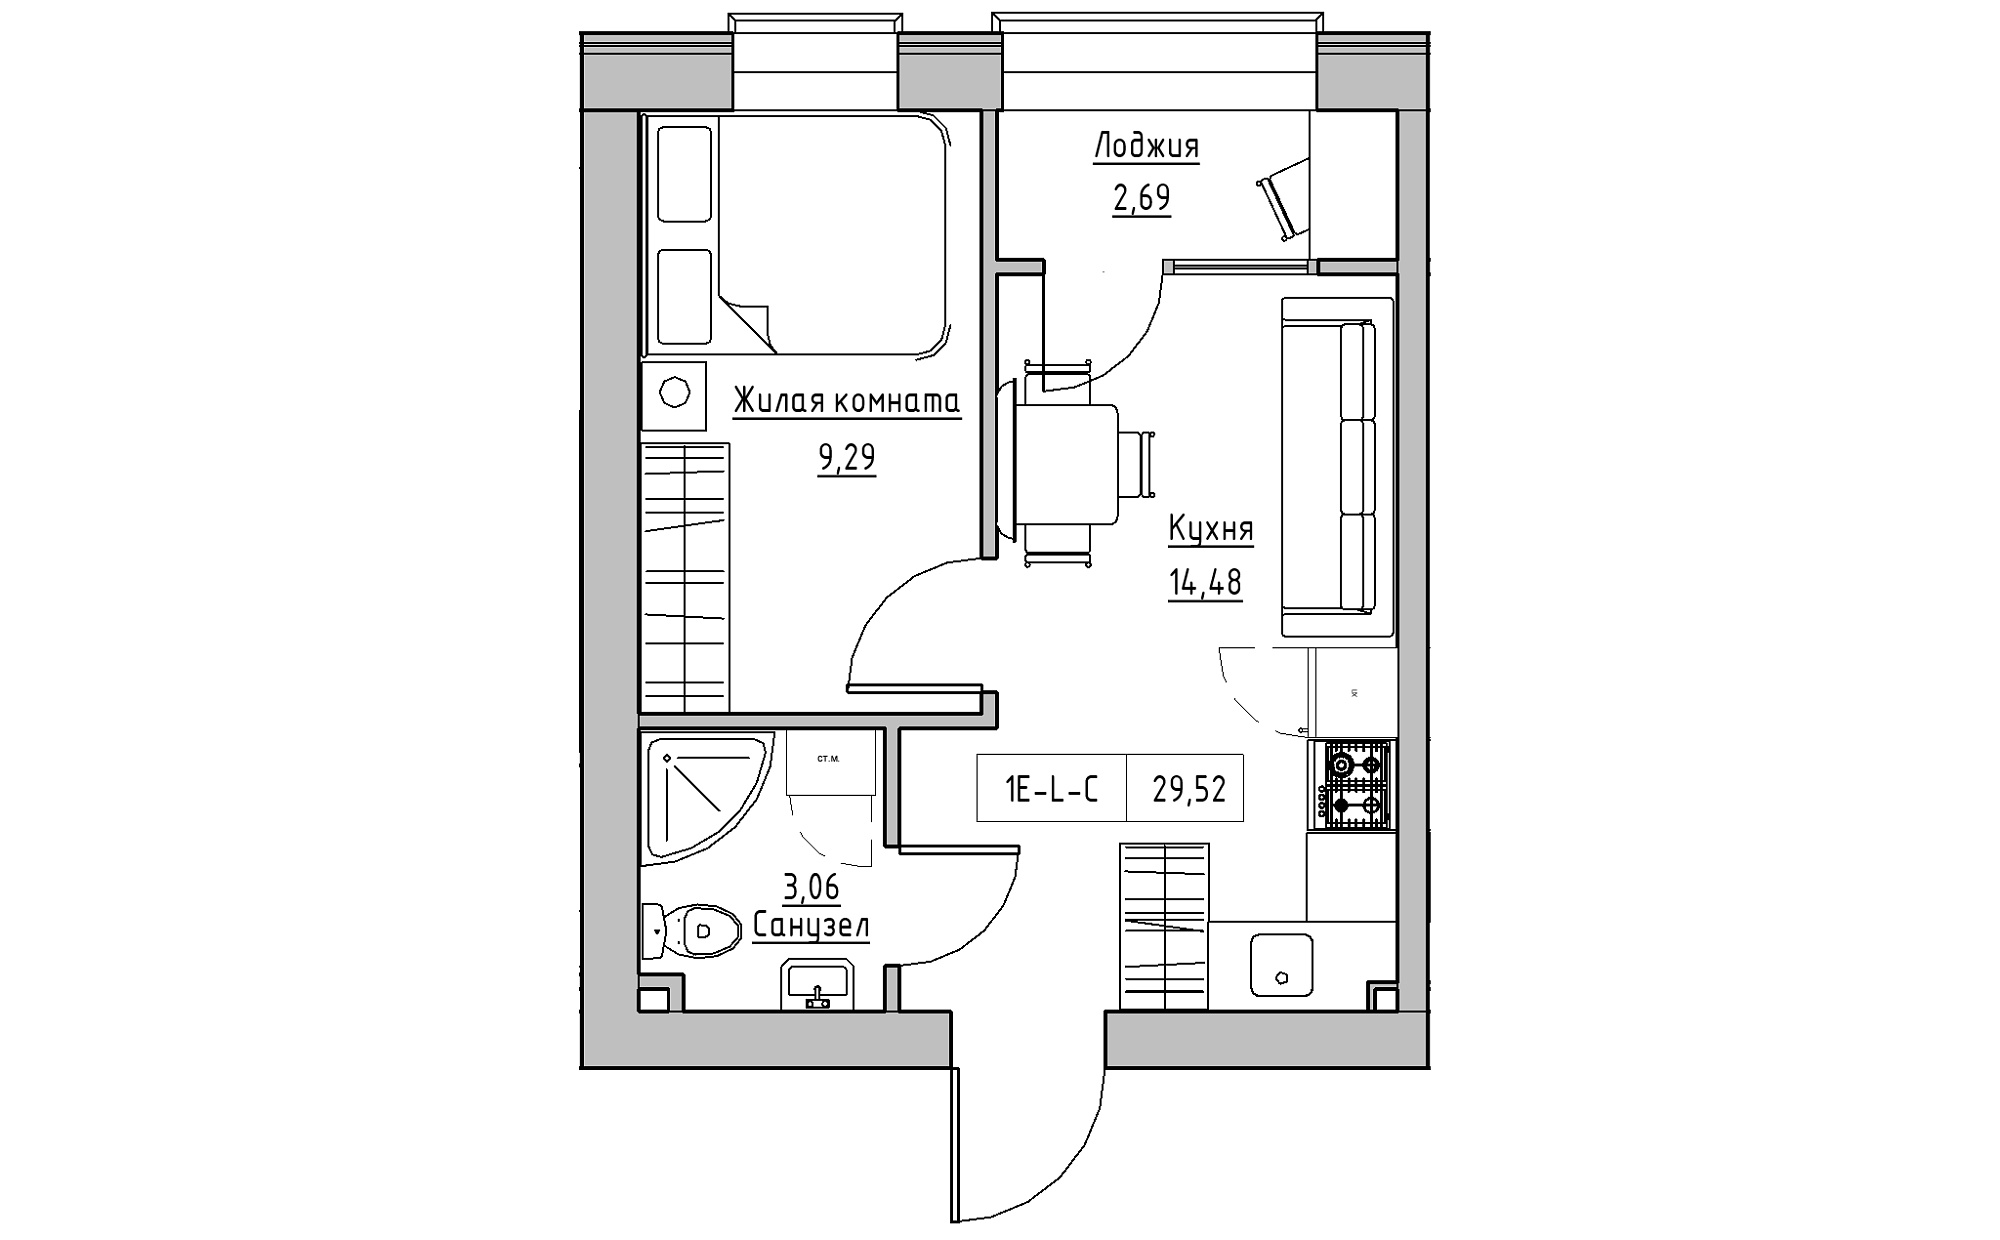 Планування 1-к квартира площею 29.52м2, KS-022-03/0006.